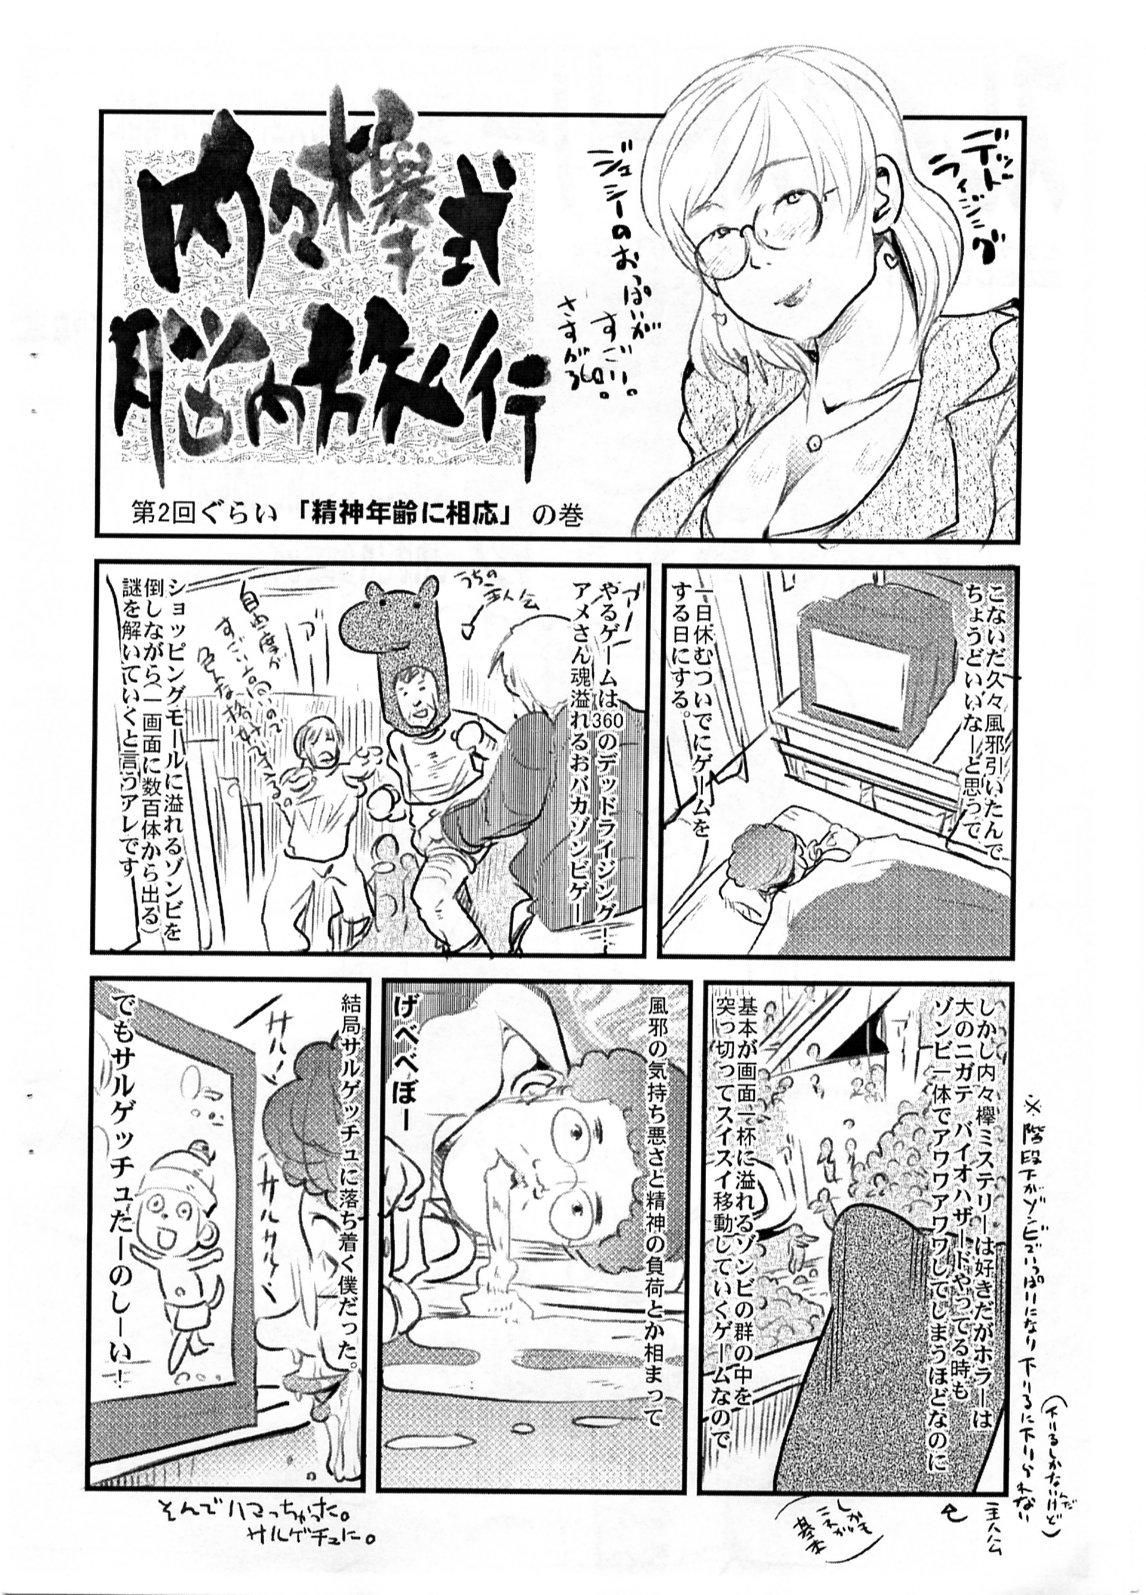 Sislovesme Yaseiji ni iroiro oshieru hon nano da - Digimon savers Livecams - Page 11